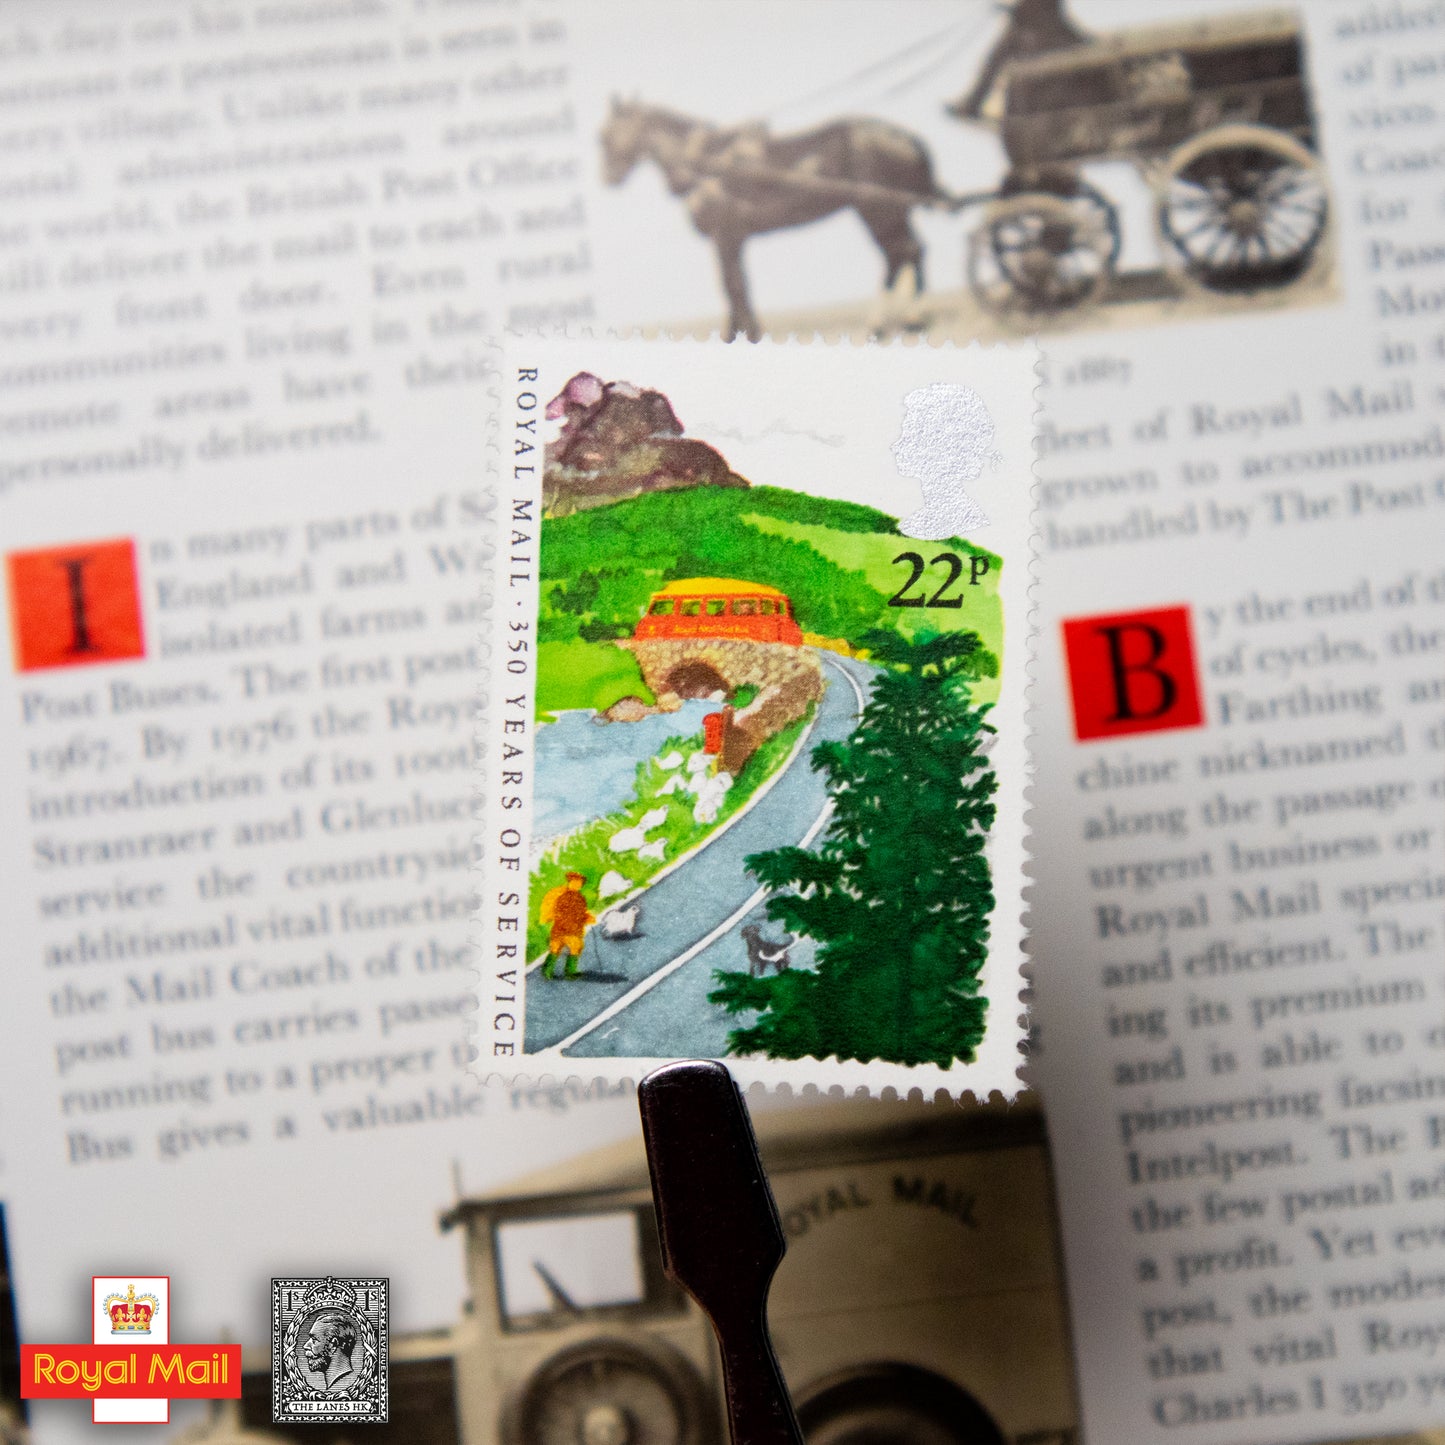 #163: 1985年 皇家郵政局服務350年 紀念郵票演示包 - The Lanes HK